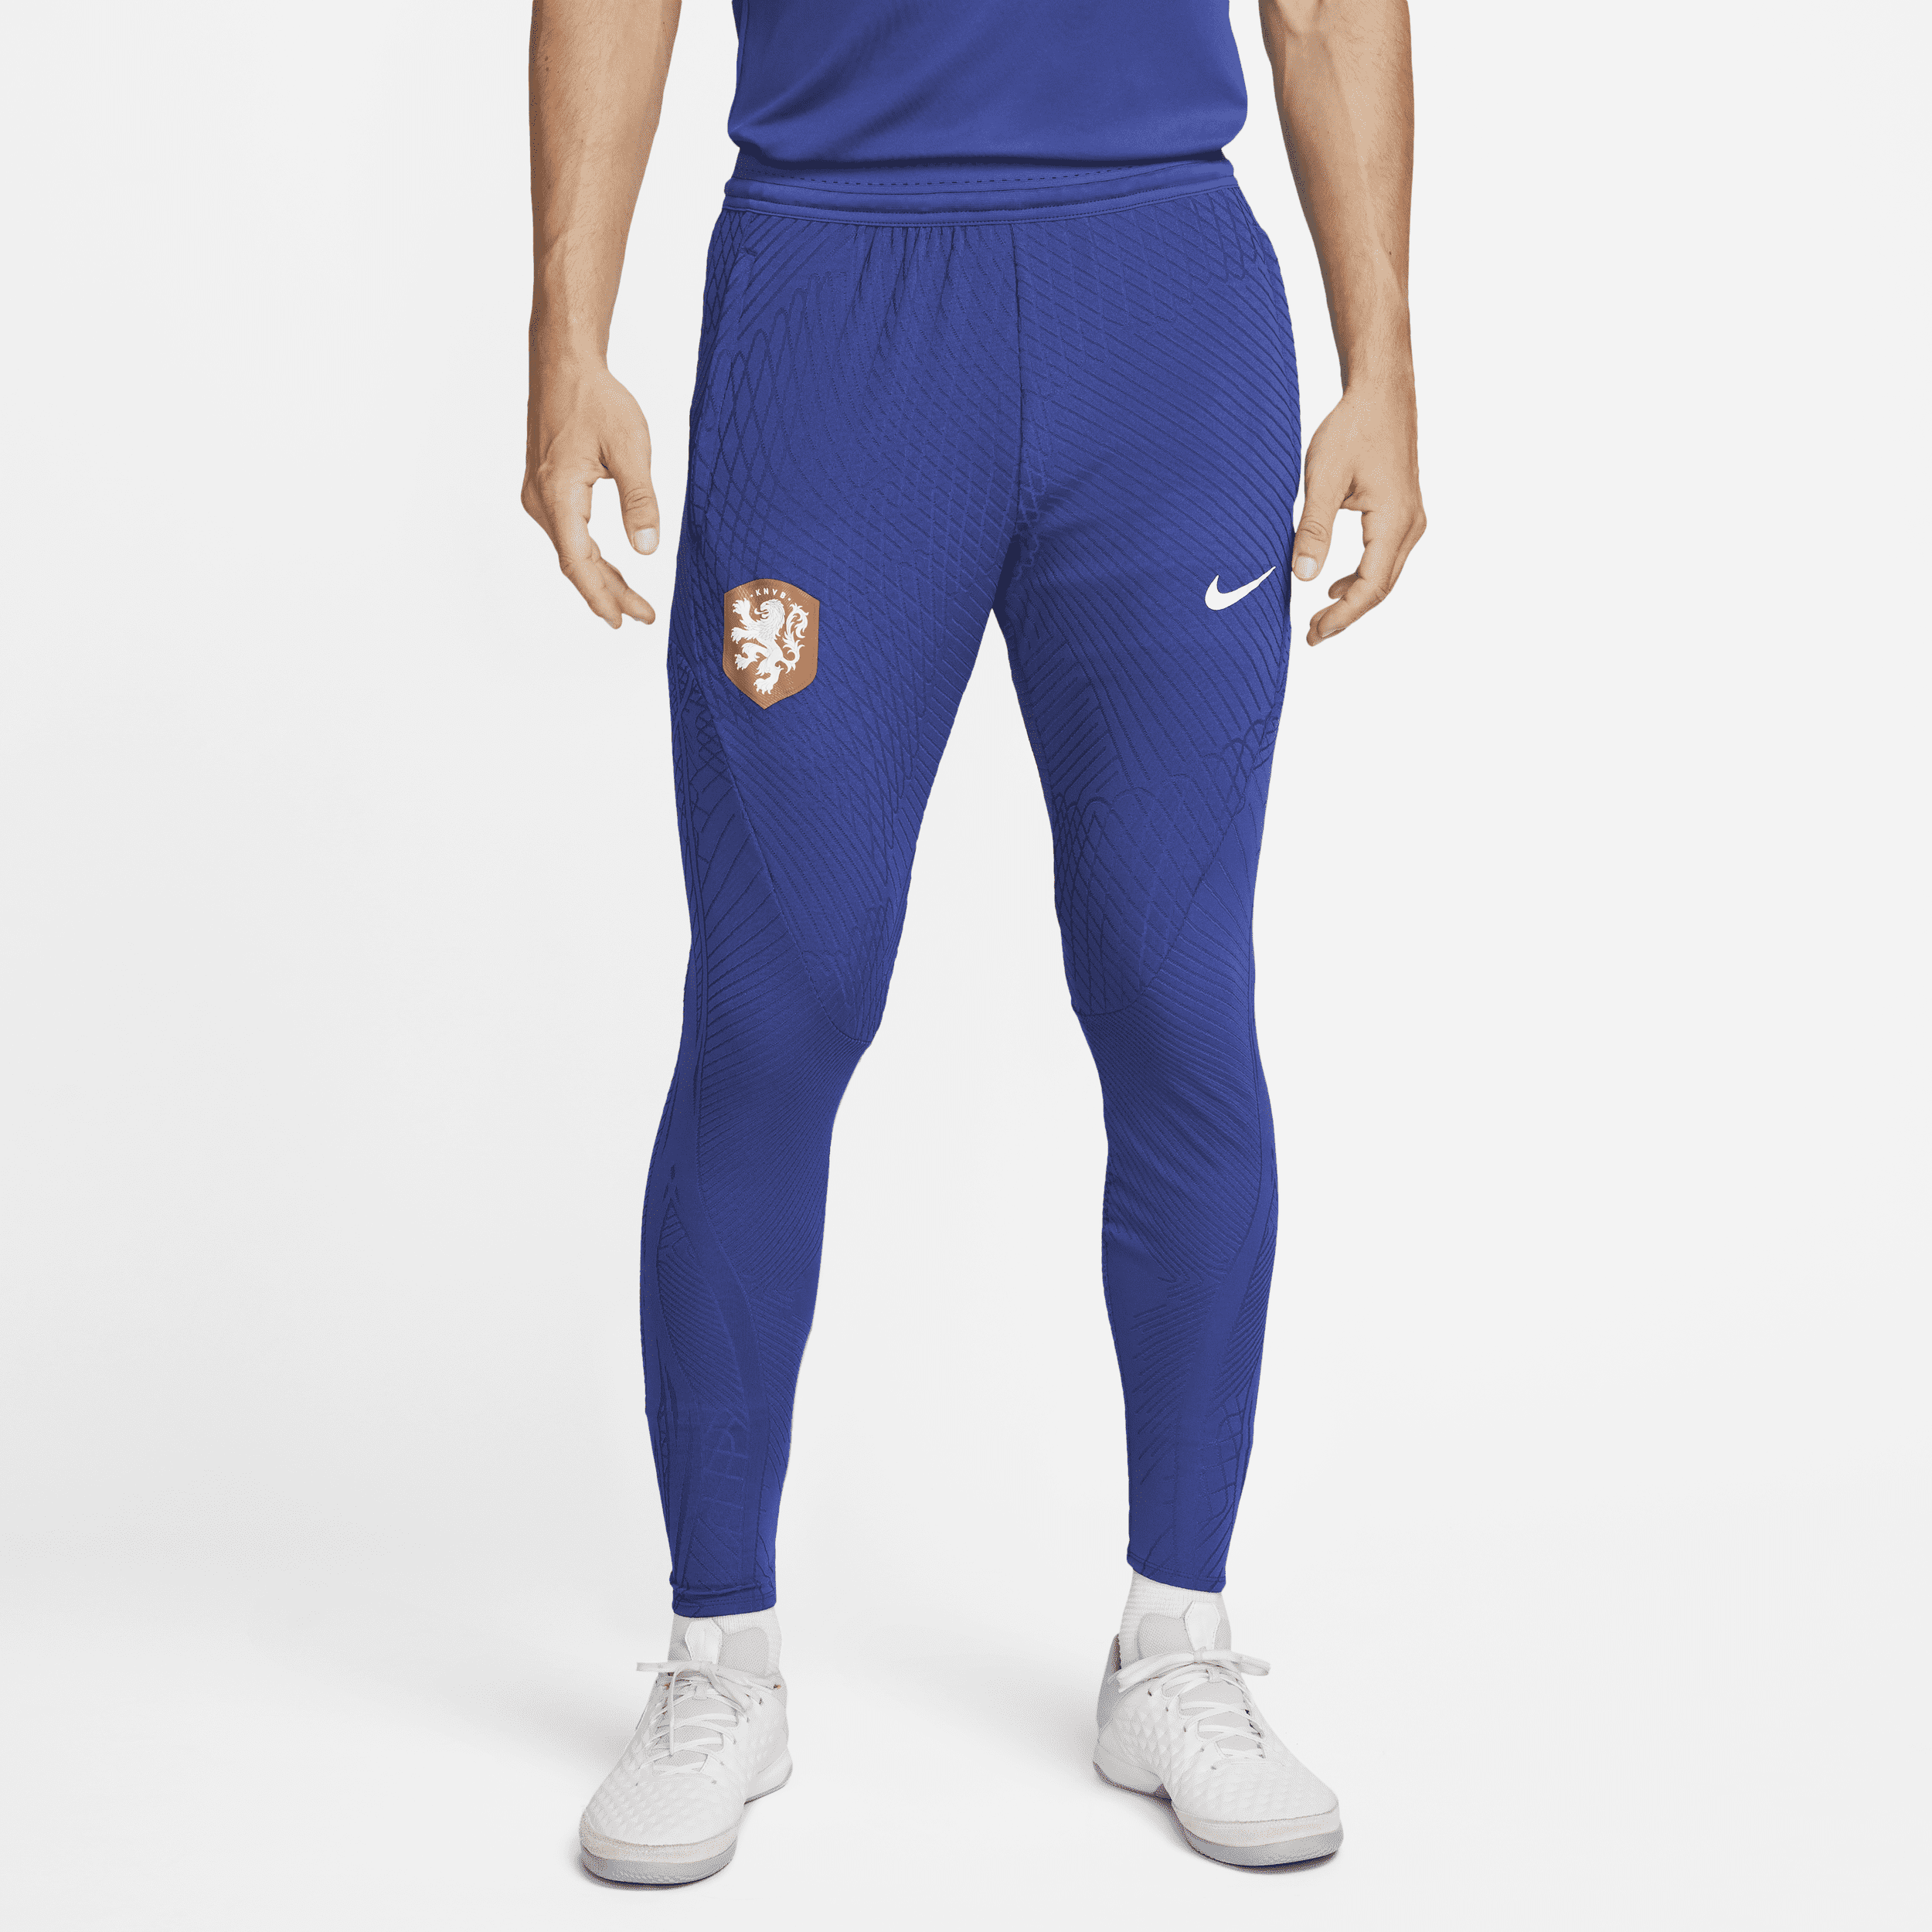 Holland Strike Elite Nike Dri-FIT ADV-fodboldbukser til mænd - blå